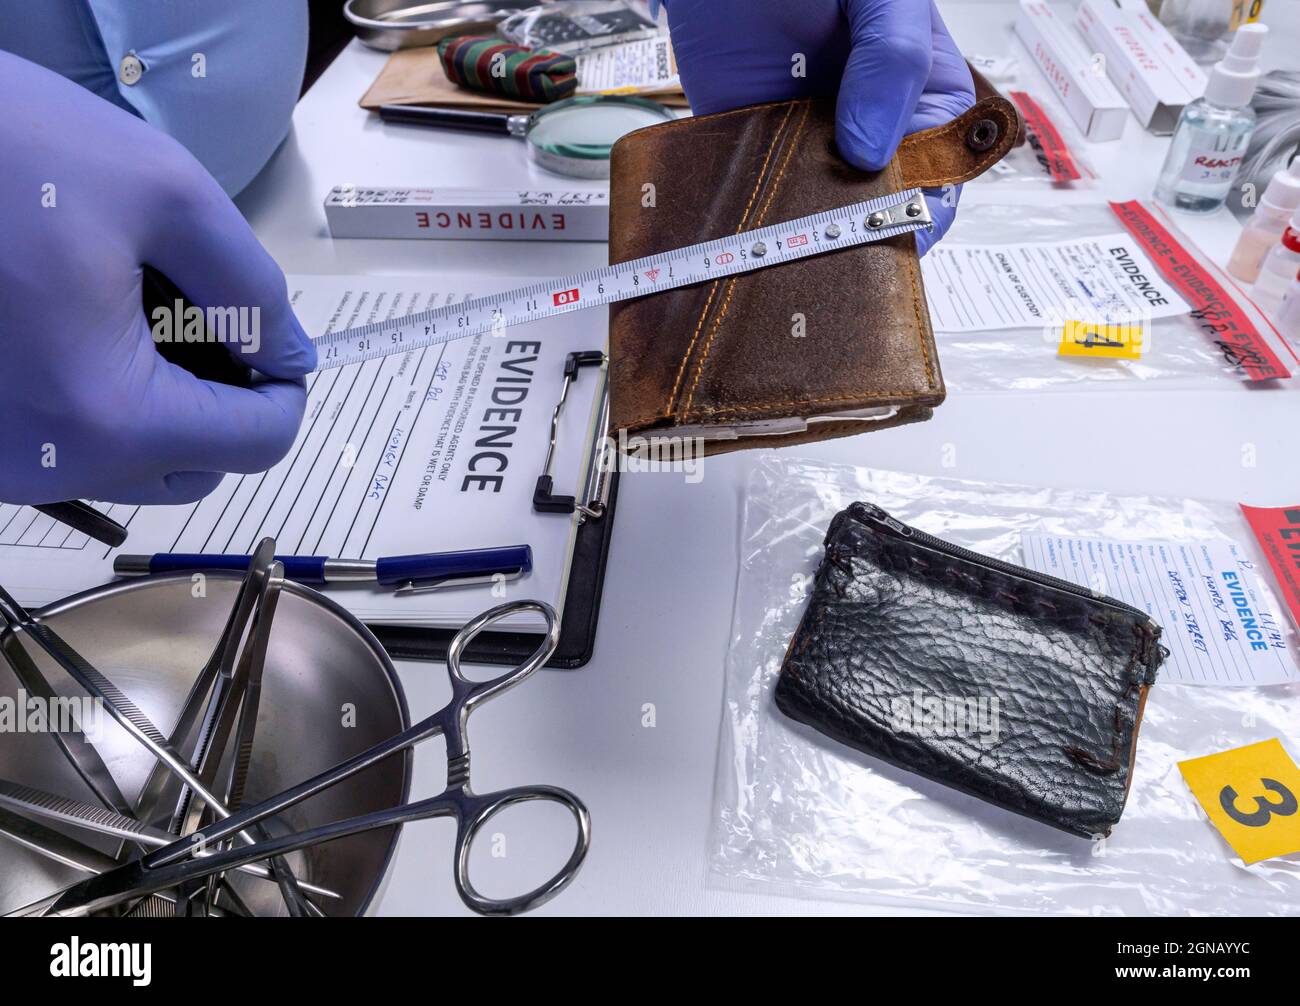 Un agent de police spécialisé mesure un portefeuille dans un laboratoire de crime, image conceptuelle Banque D'Images